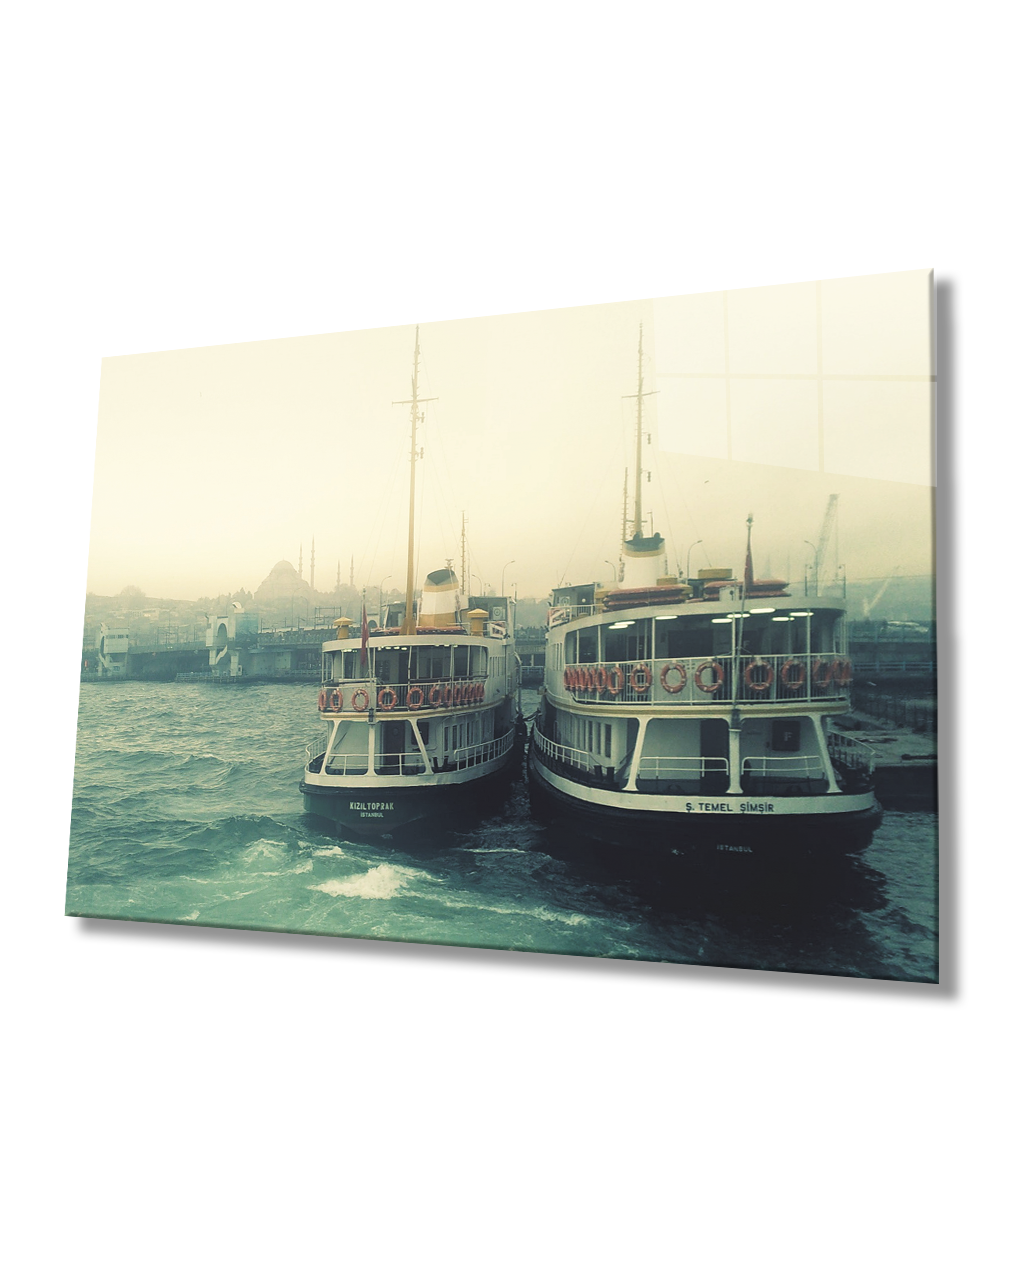 İstanbul Deniz Otobüsleri Cam Tablo 4mm Dayanıklı Temperli Cam